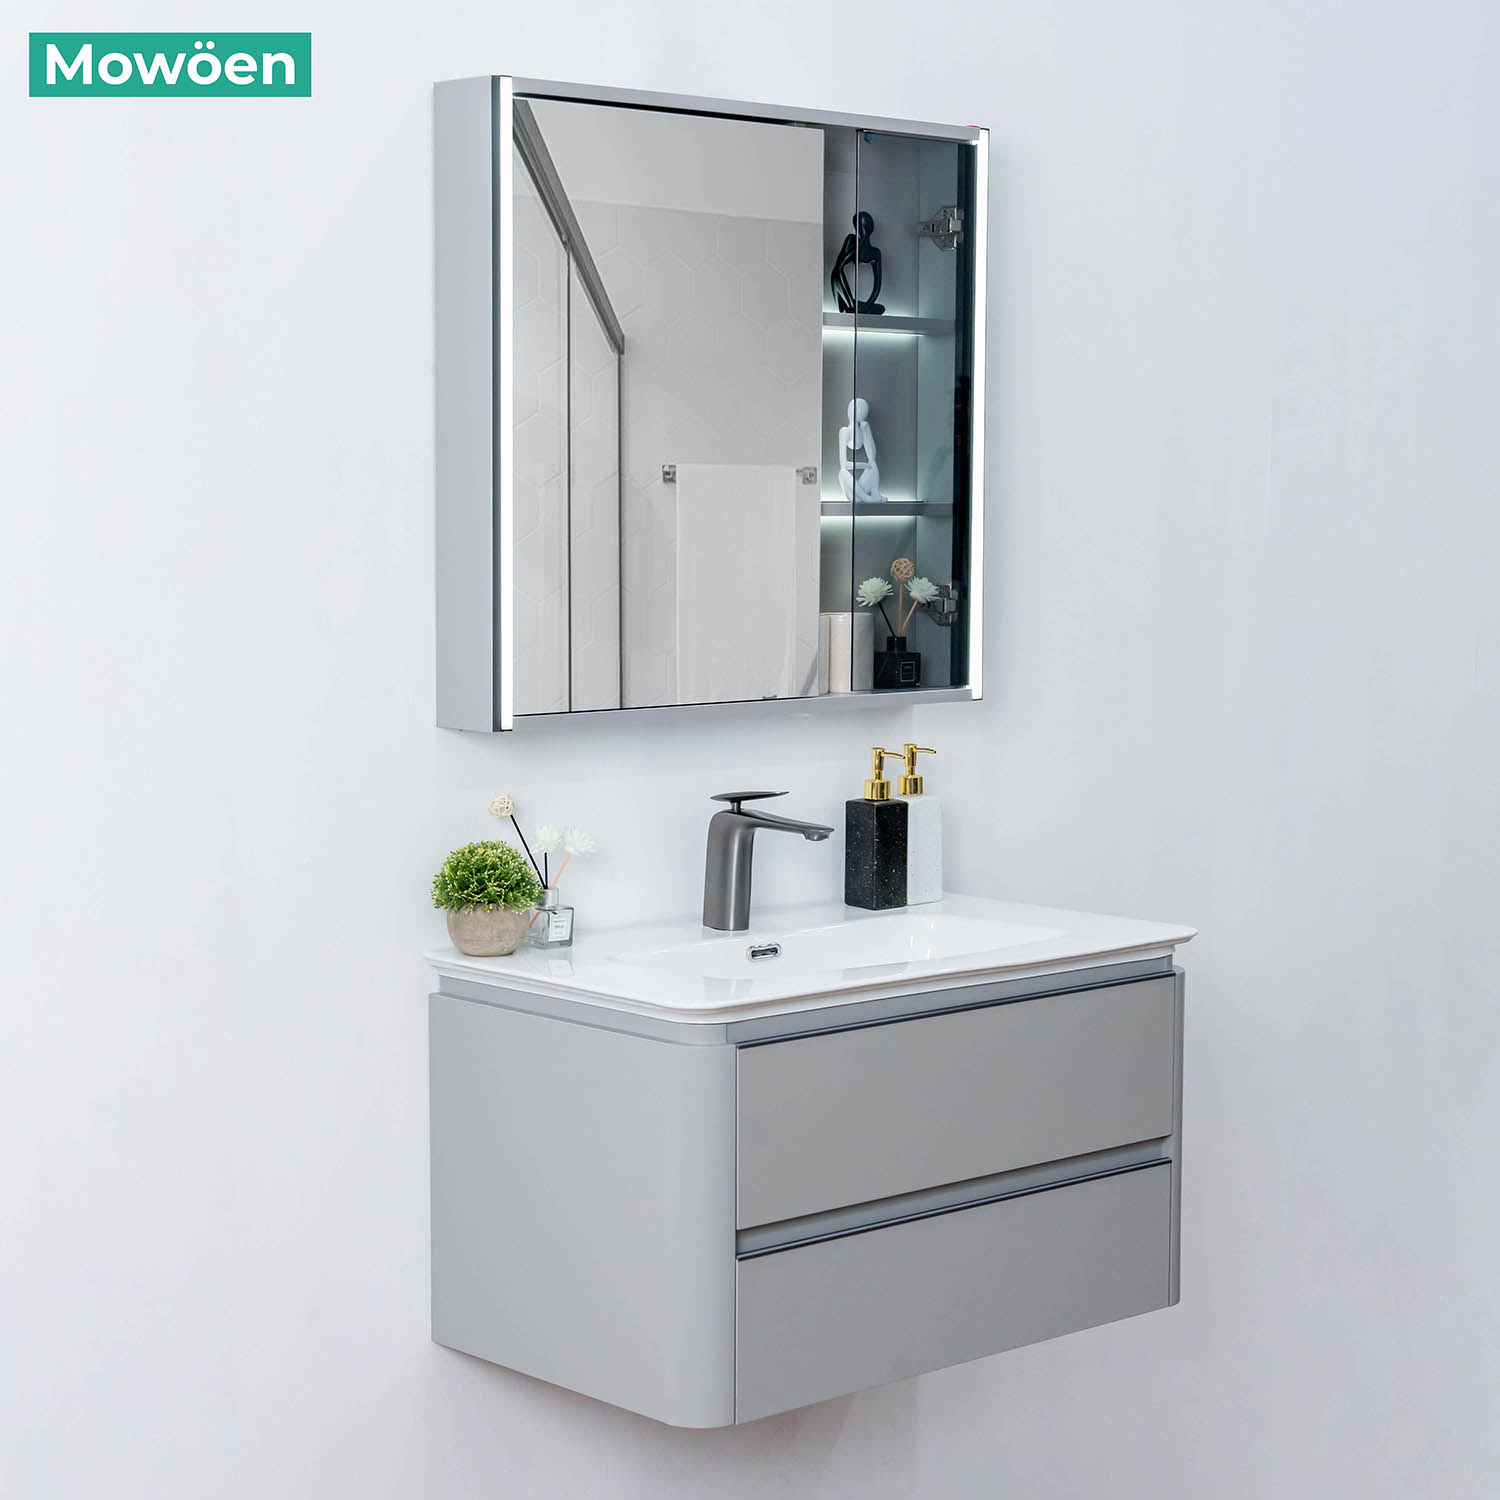 Tủ Lavabo Mowoen MW6632 – 80 chất liệu Plywood treo tường phòng tắm